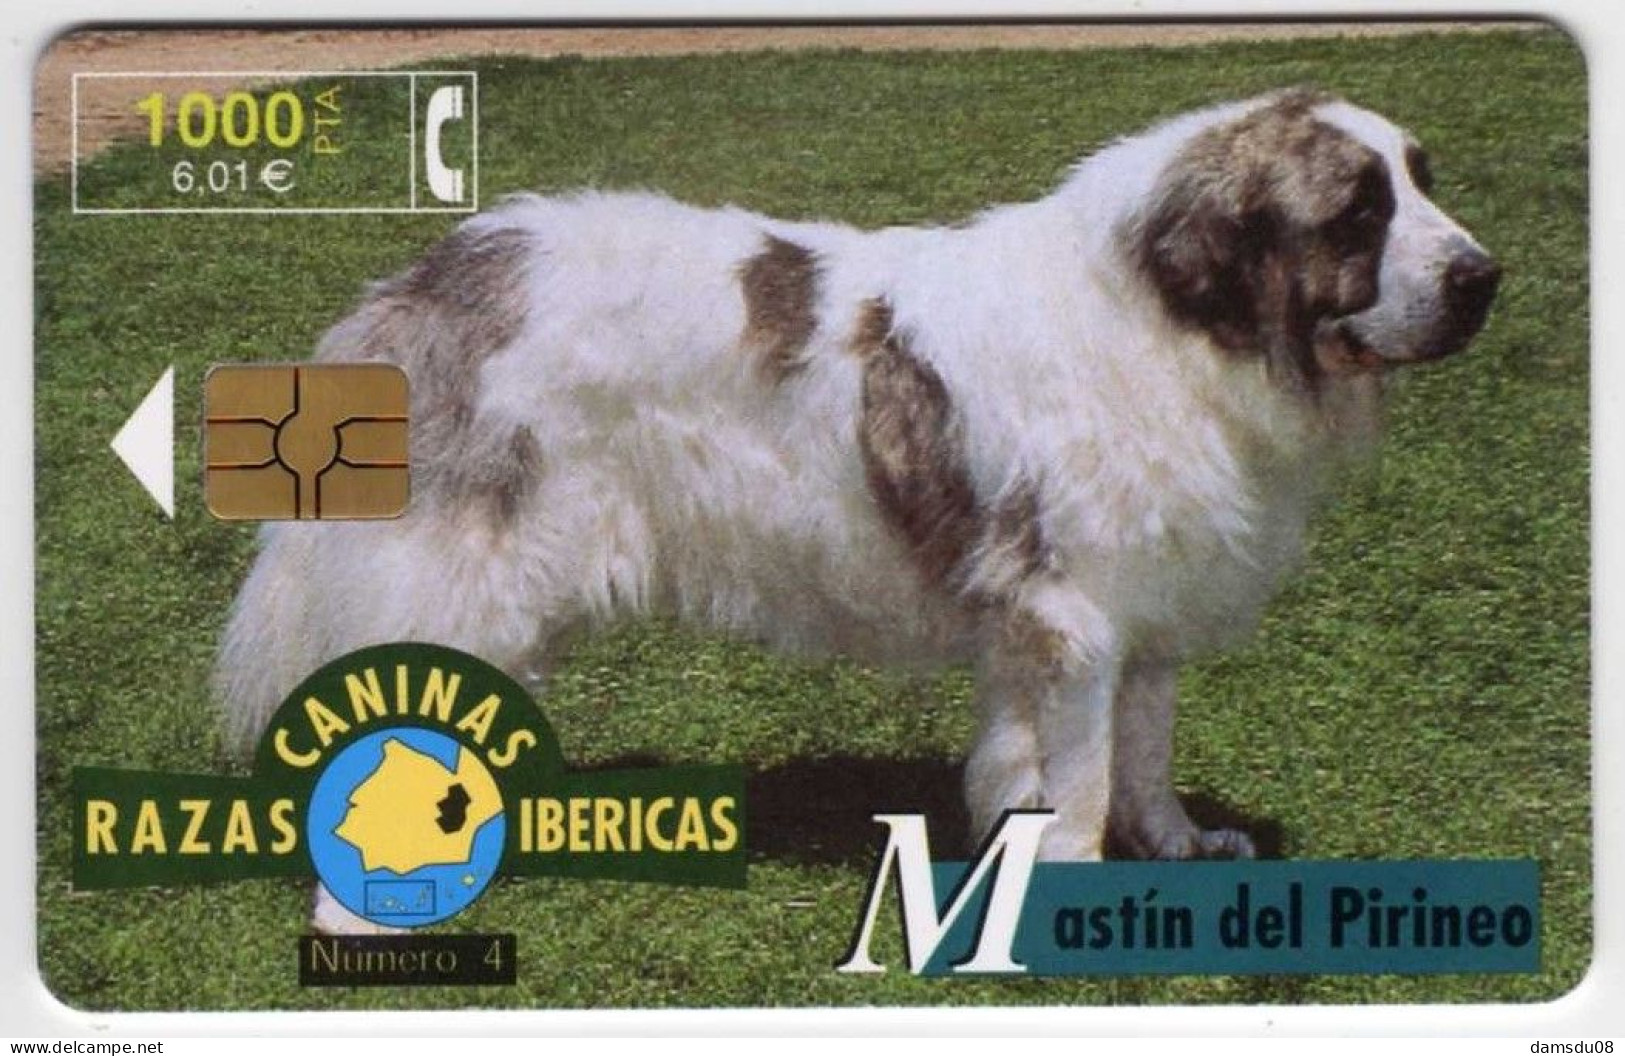 Espagne 1000 PTA RAZAS CANINAS IBERICAS Mastin Del Pirineo 10/99 500.000 Exemplaires Vide Chien - Emissions Basiques